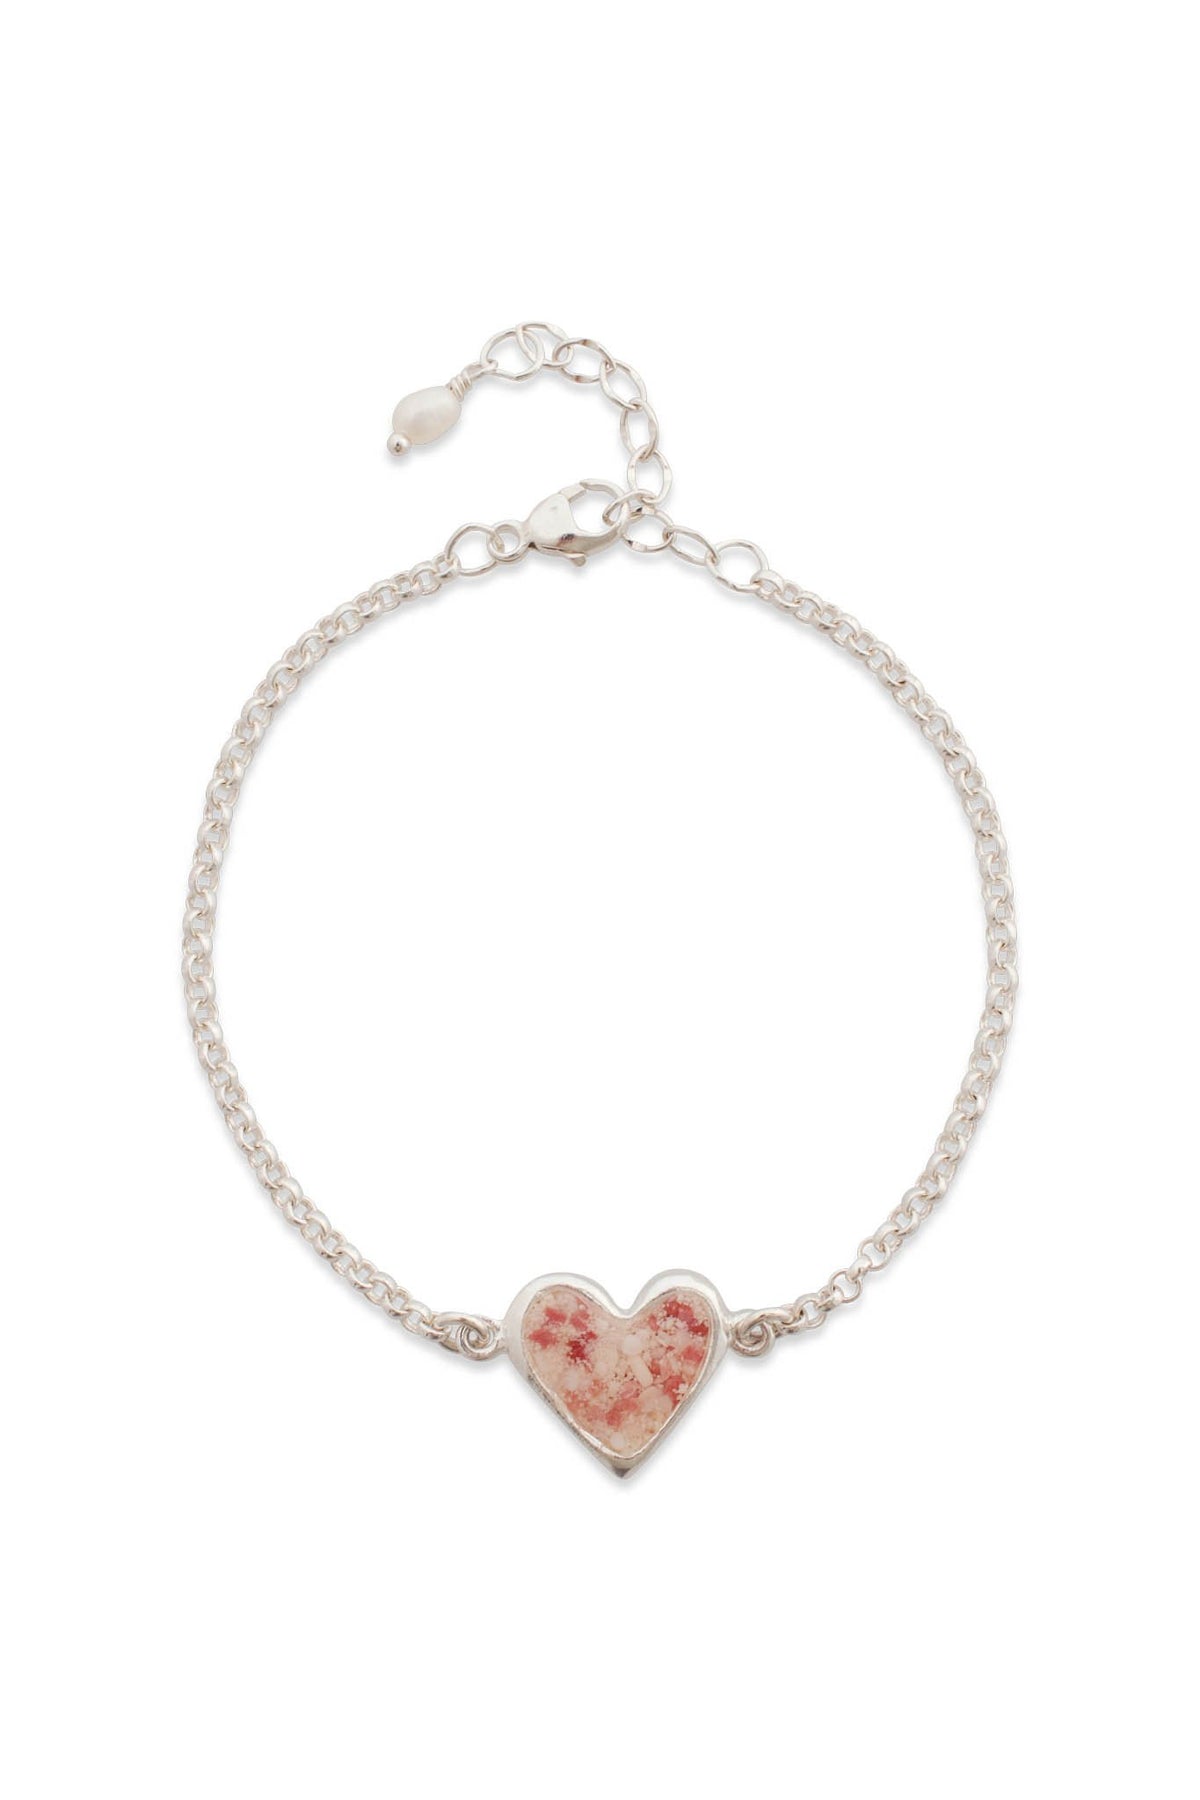 Splash ~ Heart (Juliet) Inline Bracelet - Alexandra Mosher Studio Jewellery Bermuda Fine